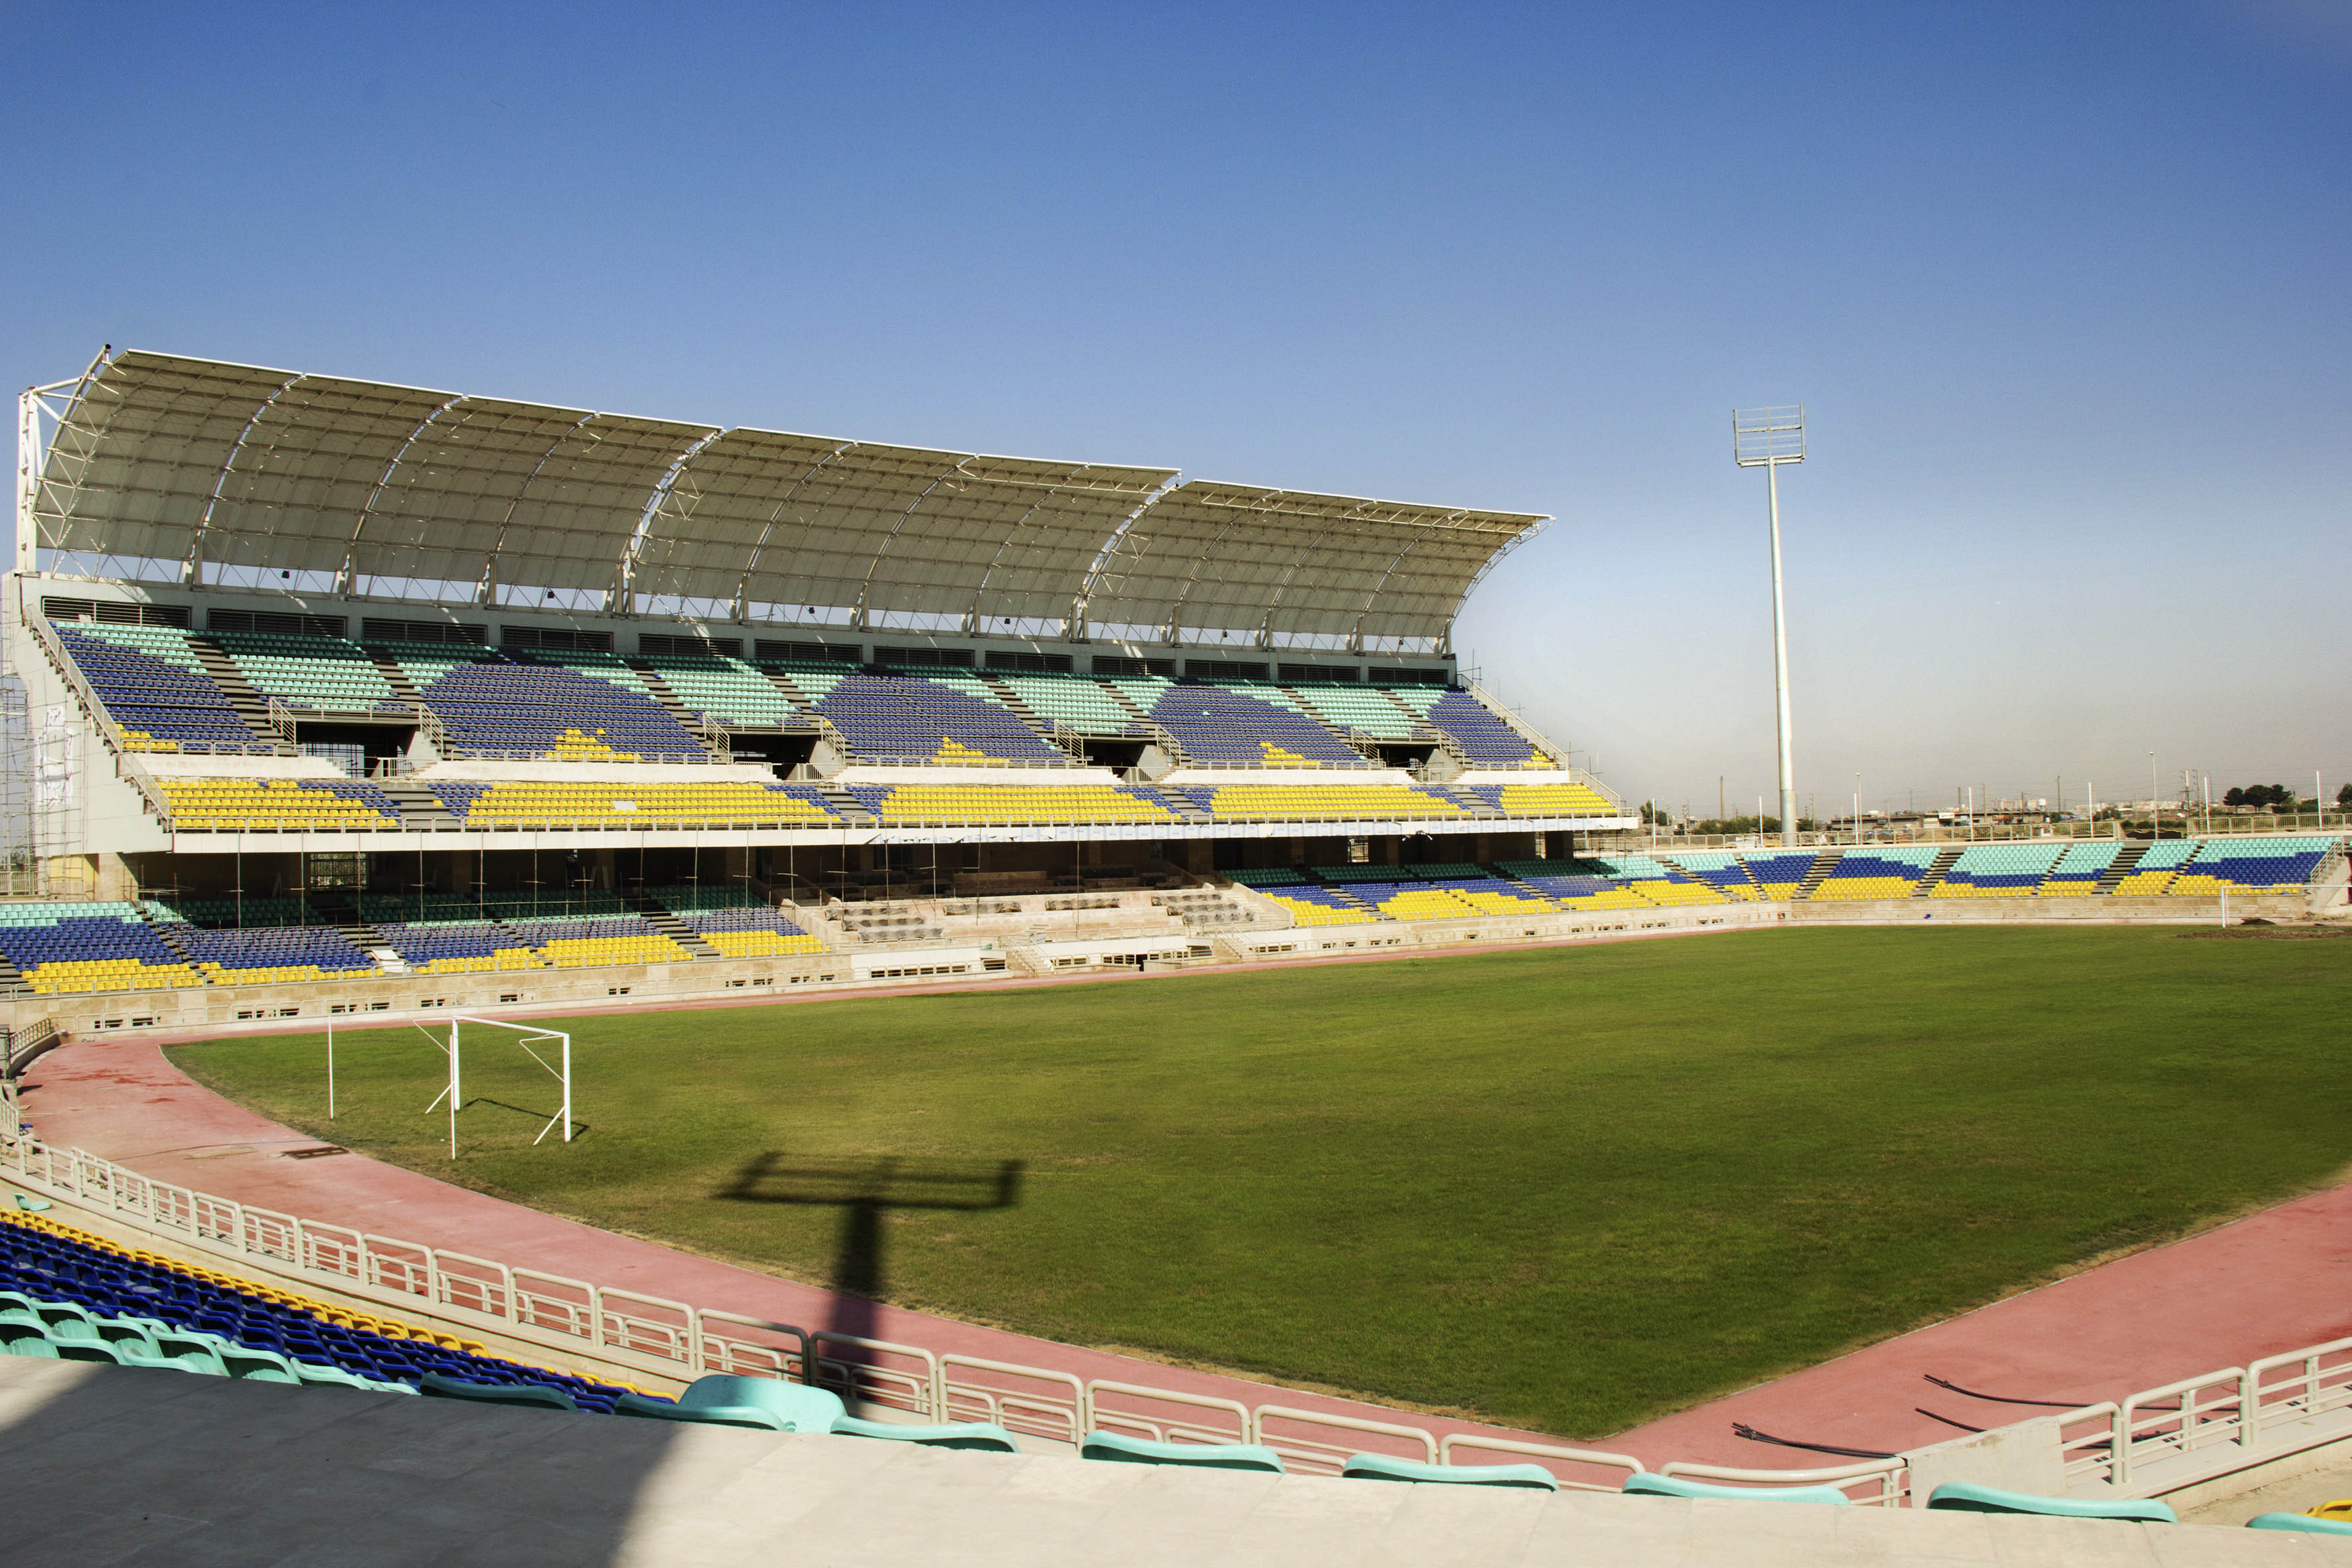 ورزشگاه اختصاصی پرسپولیس-ورزشگاه-استادیوم شهید کاظمی